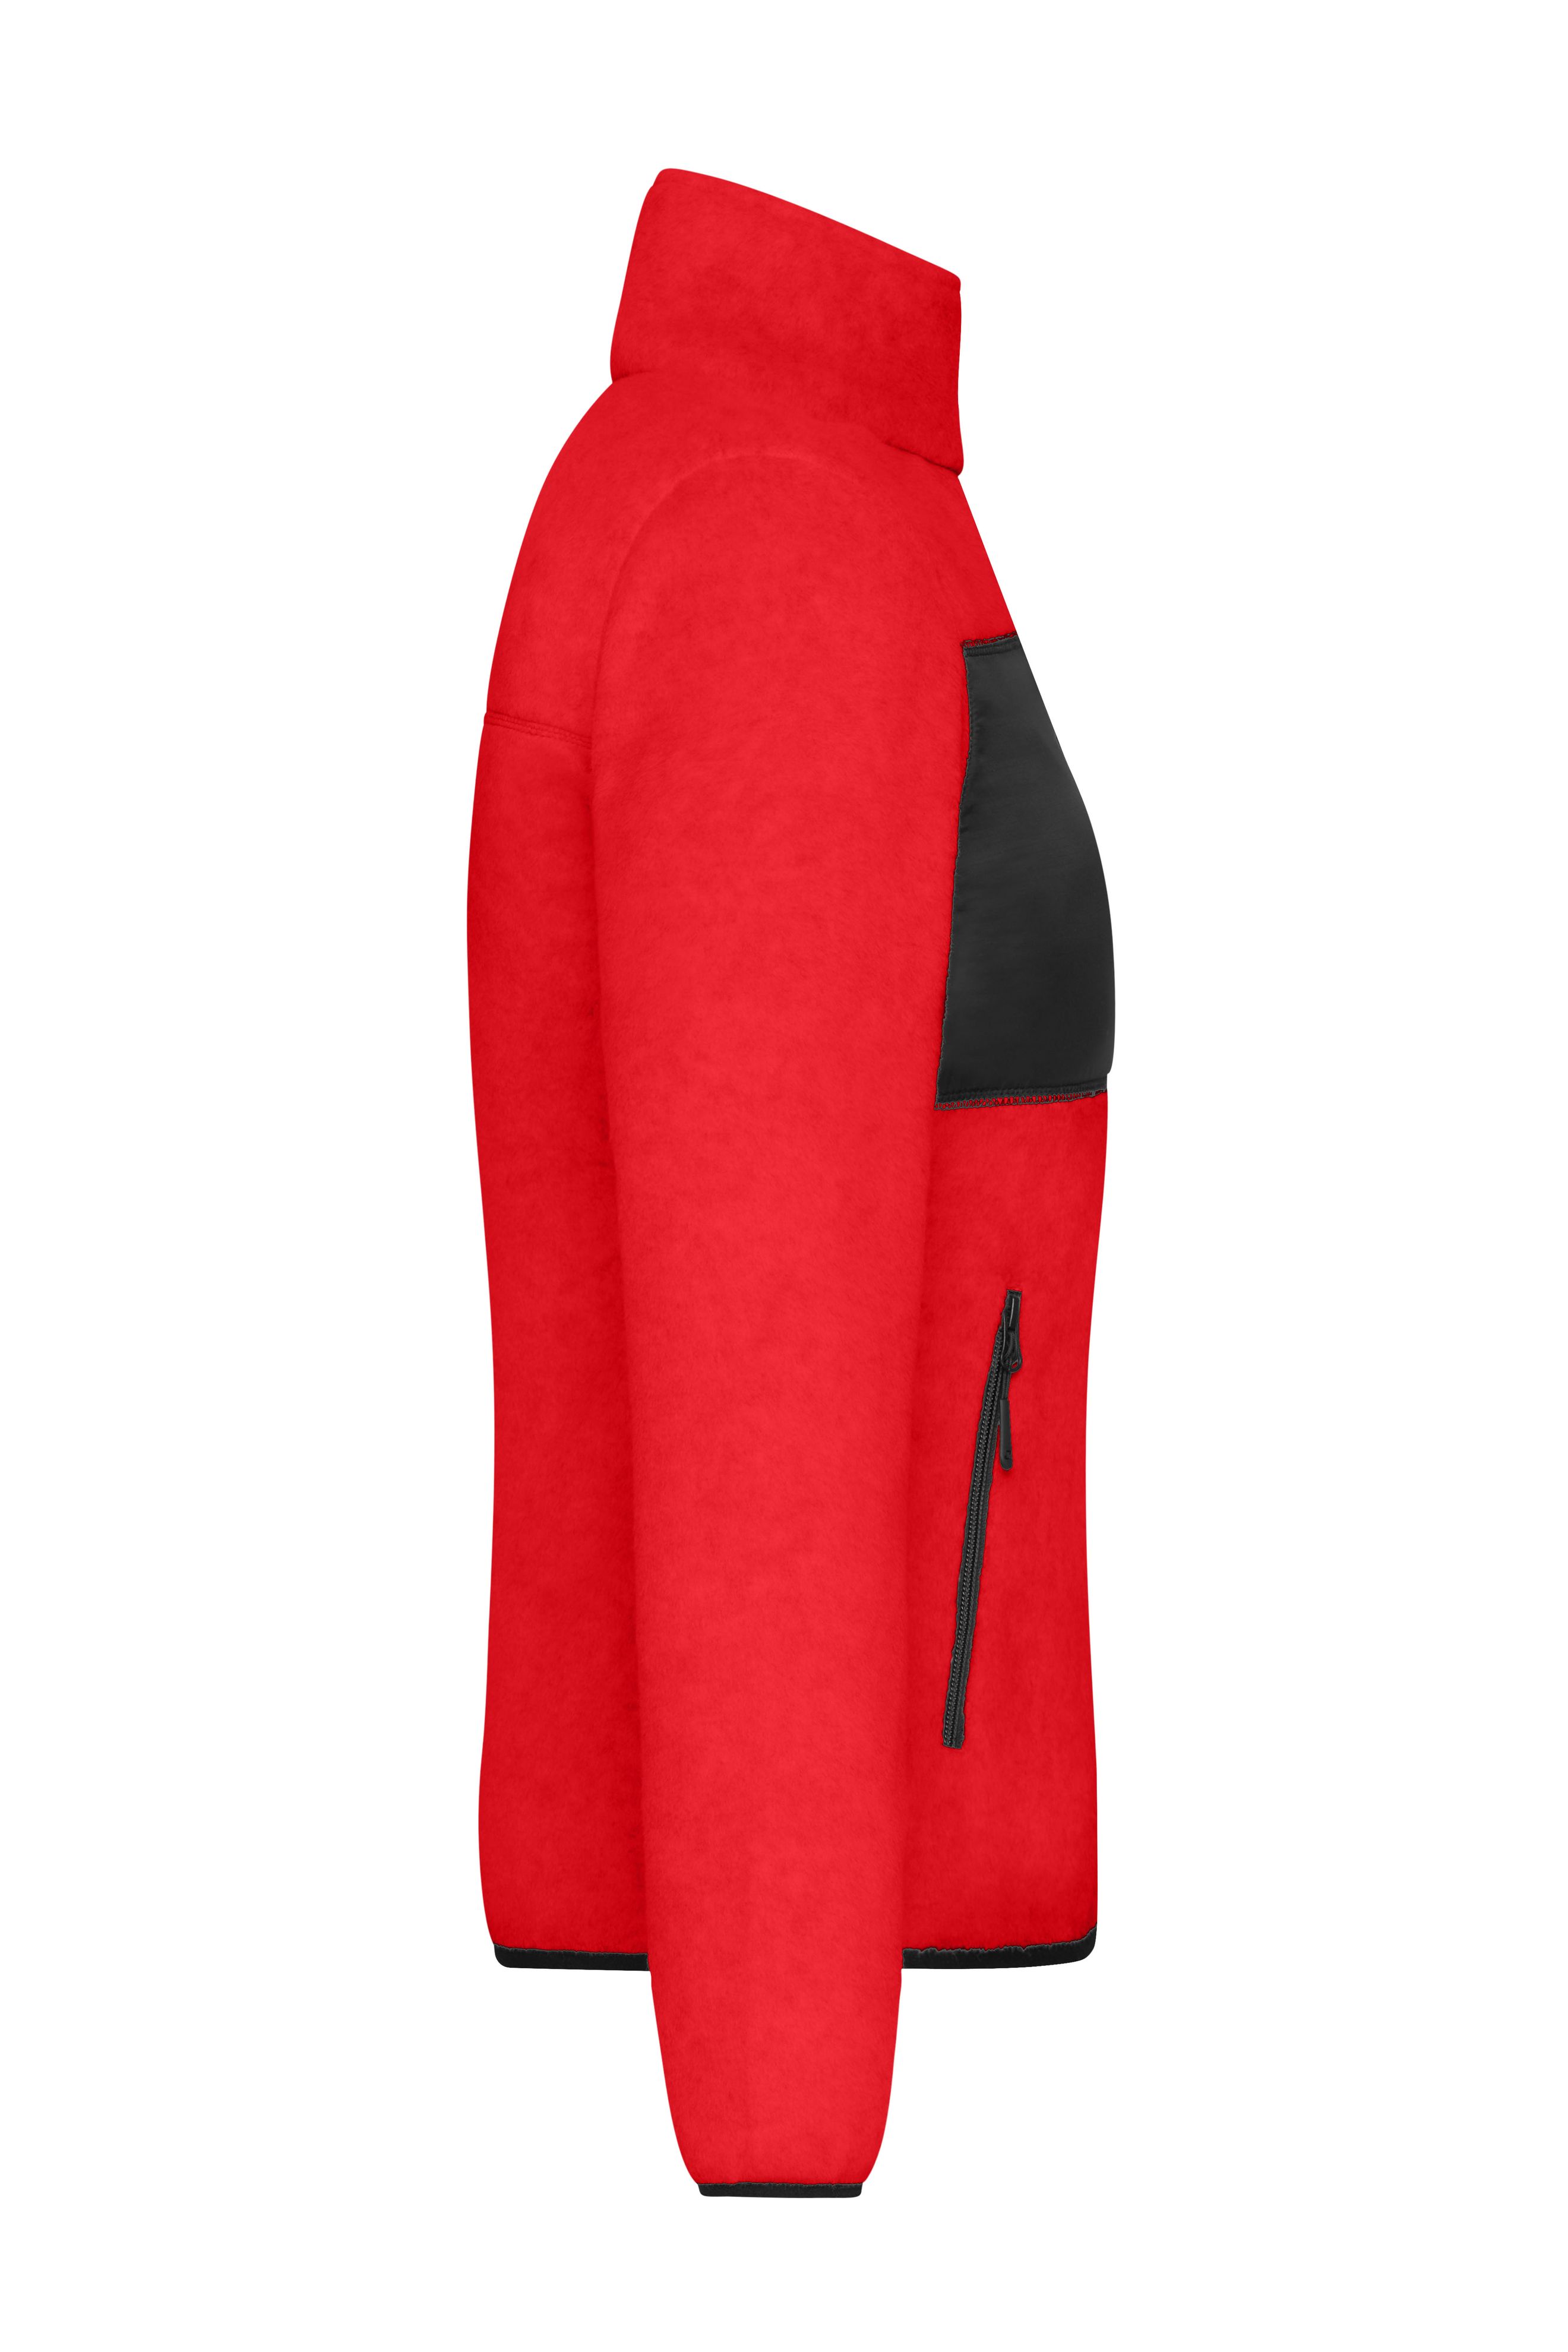 Ladies' Fleece Jacket JN1311 Fleecejacke im Materialmix